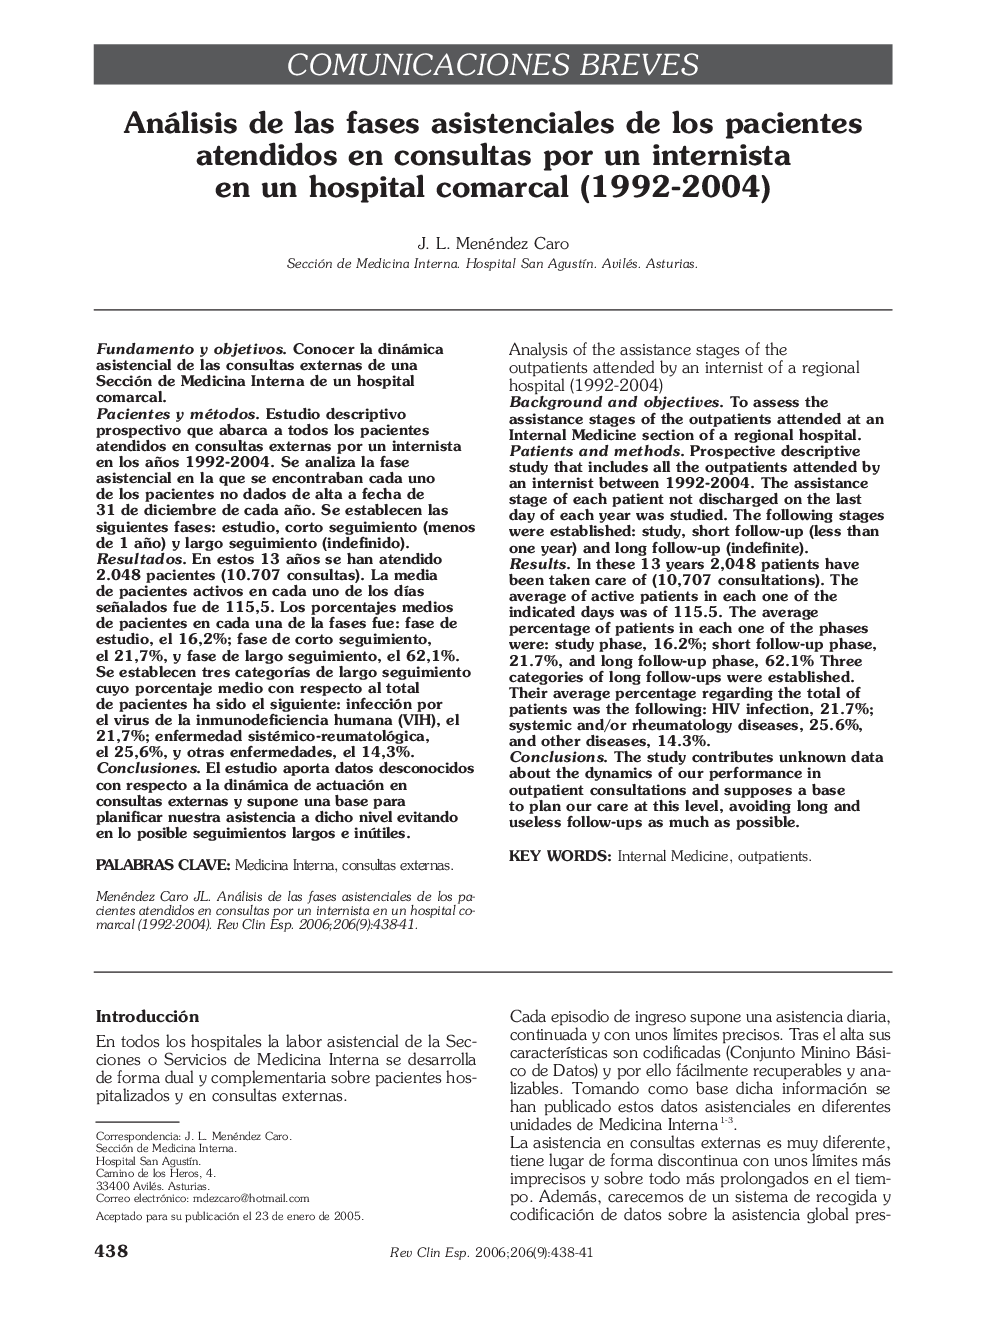 Análisis de las fases asistenciales de los pacientes atendidos en consultas por un internista en un hospital comarcal (1992-2004)